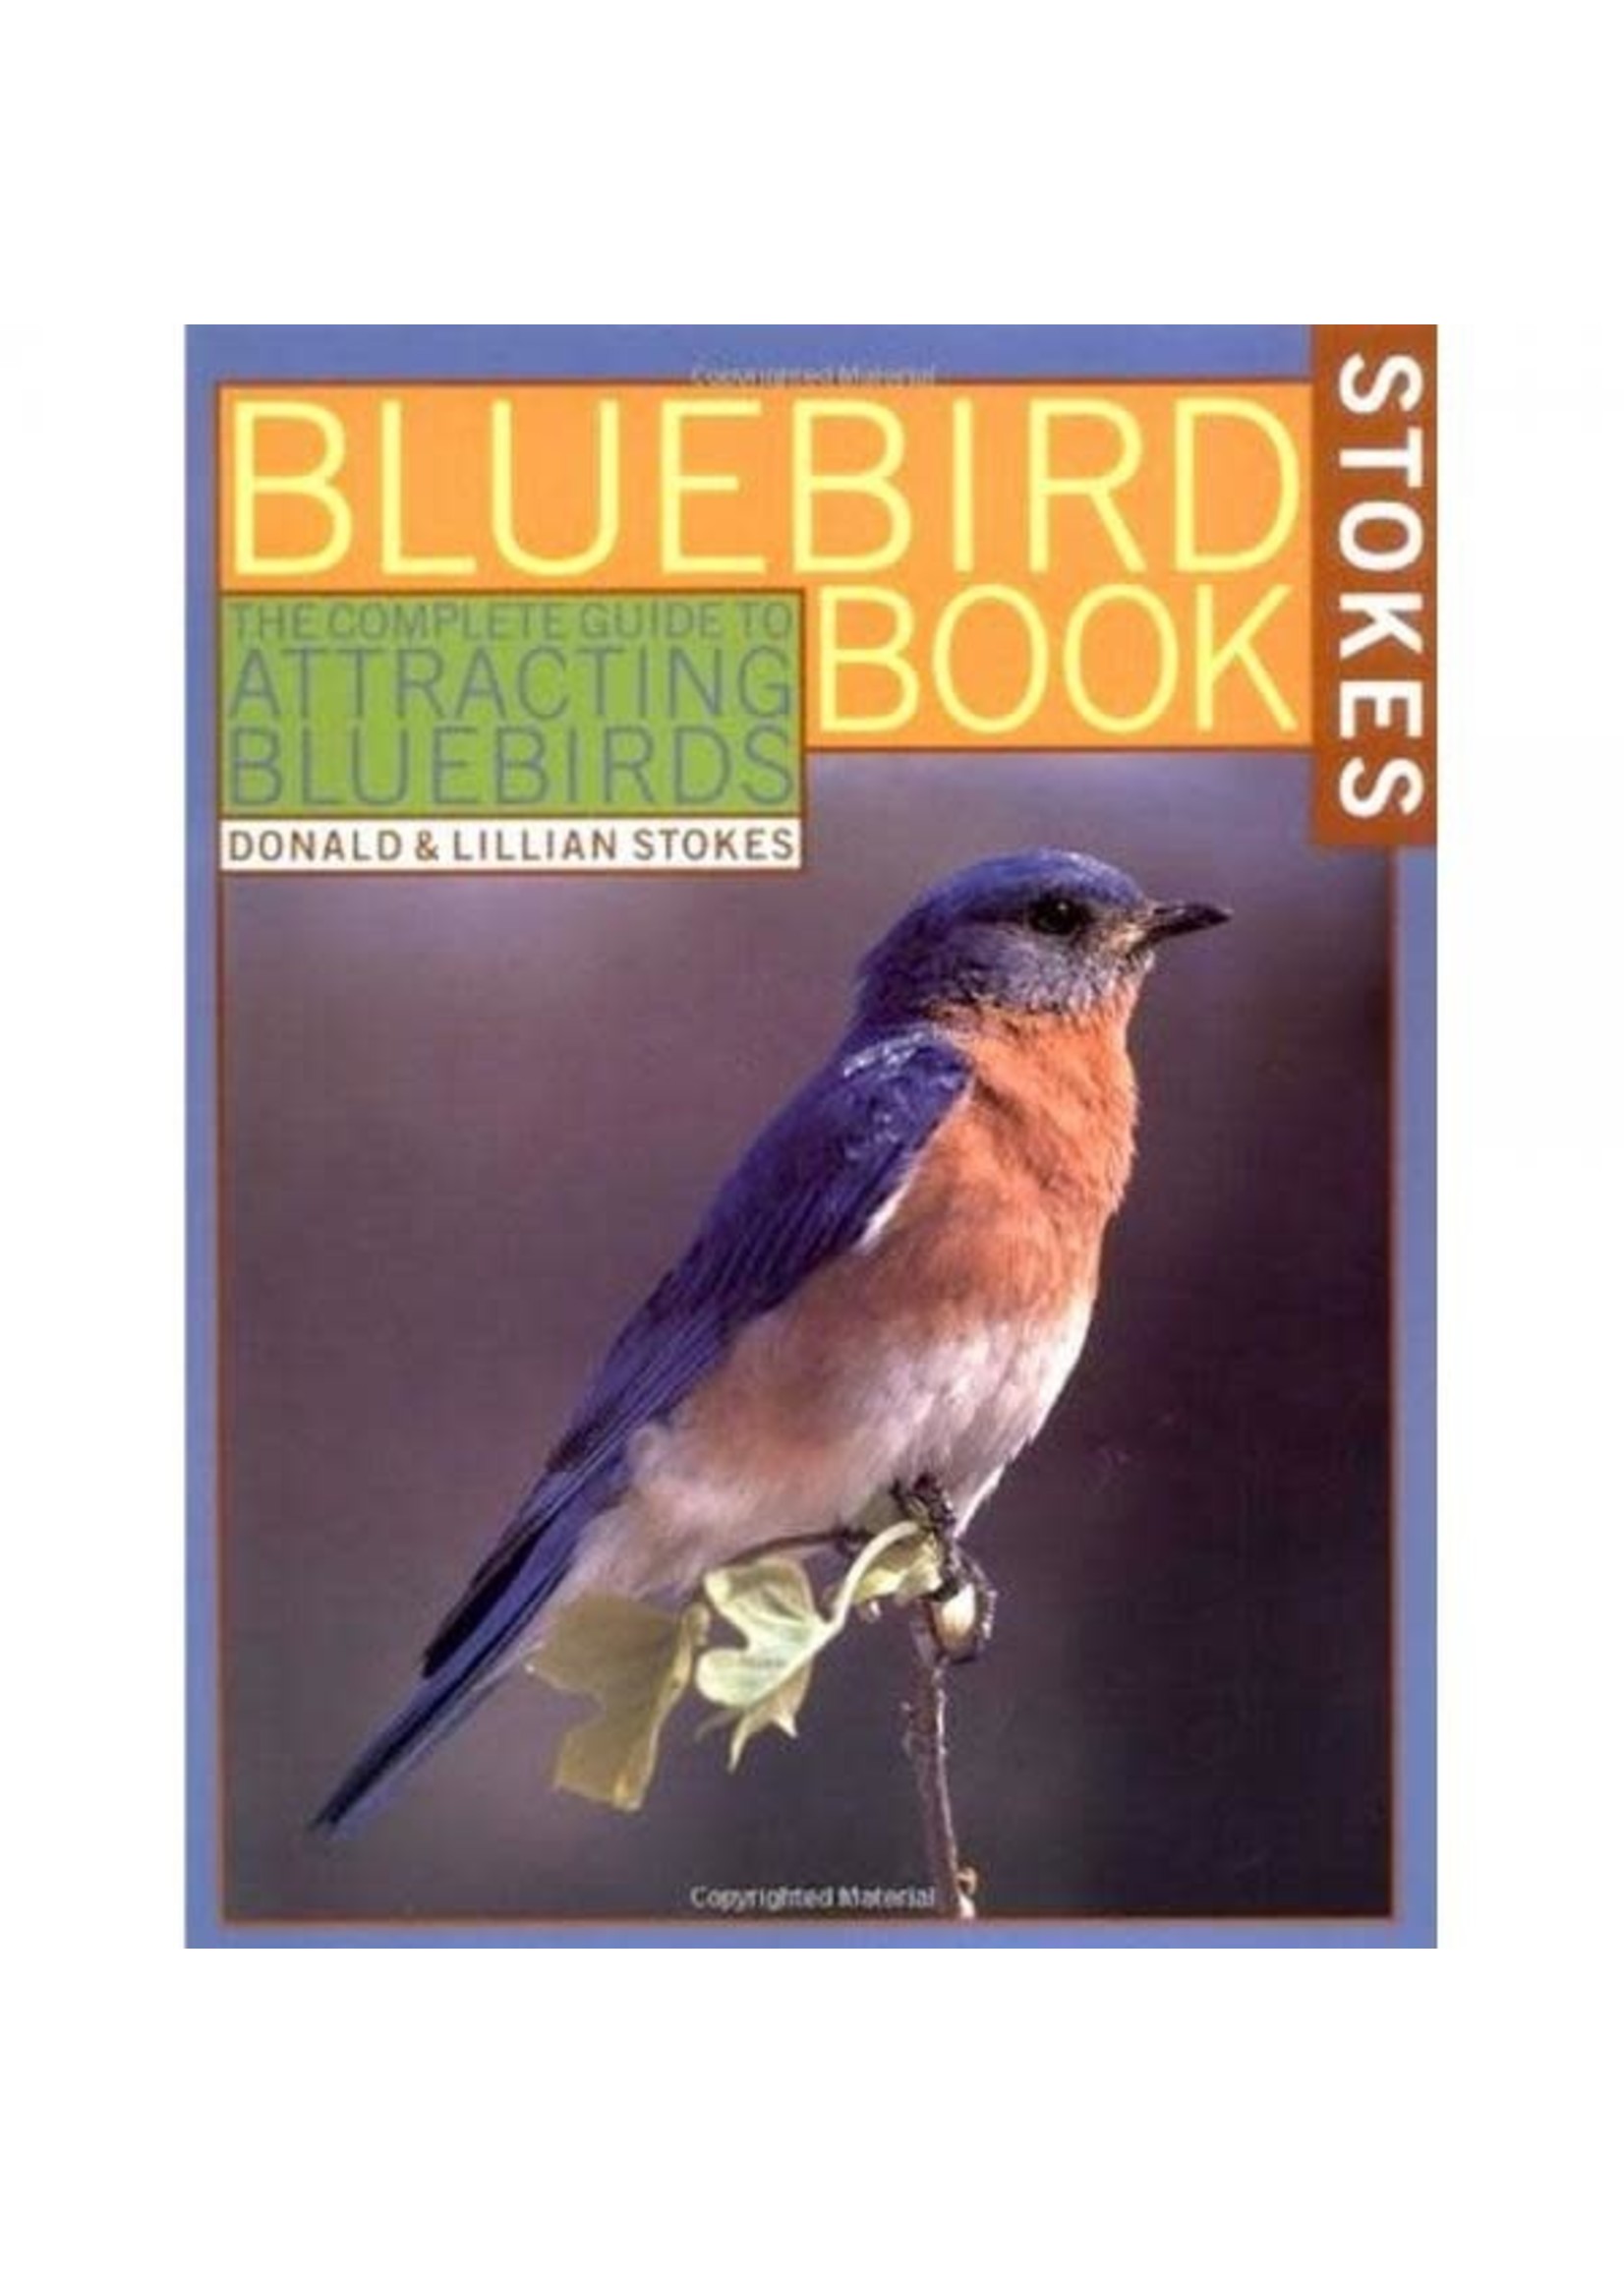 STOKES BLUEBIRD BOOK